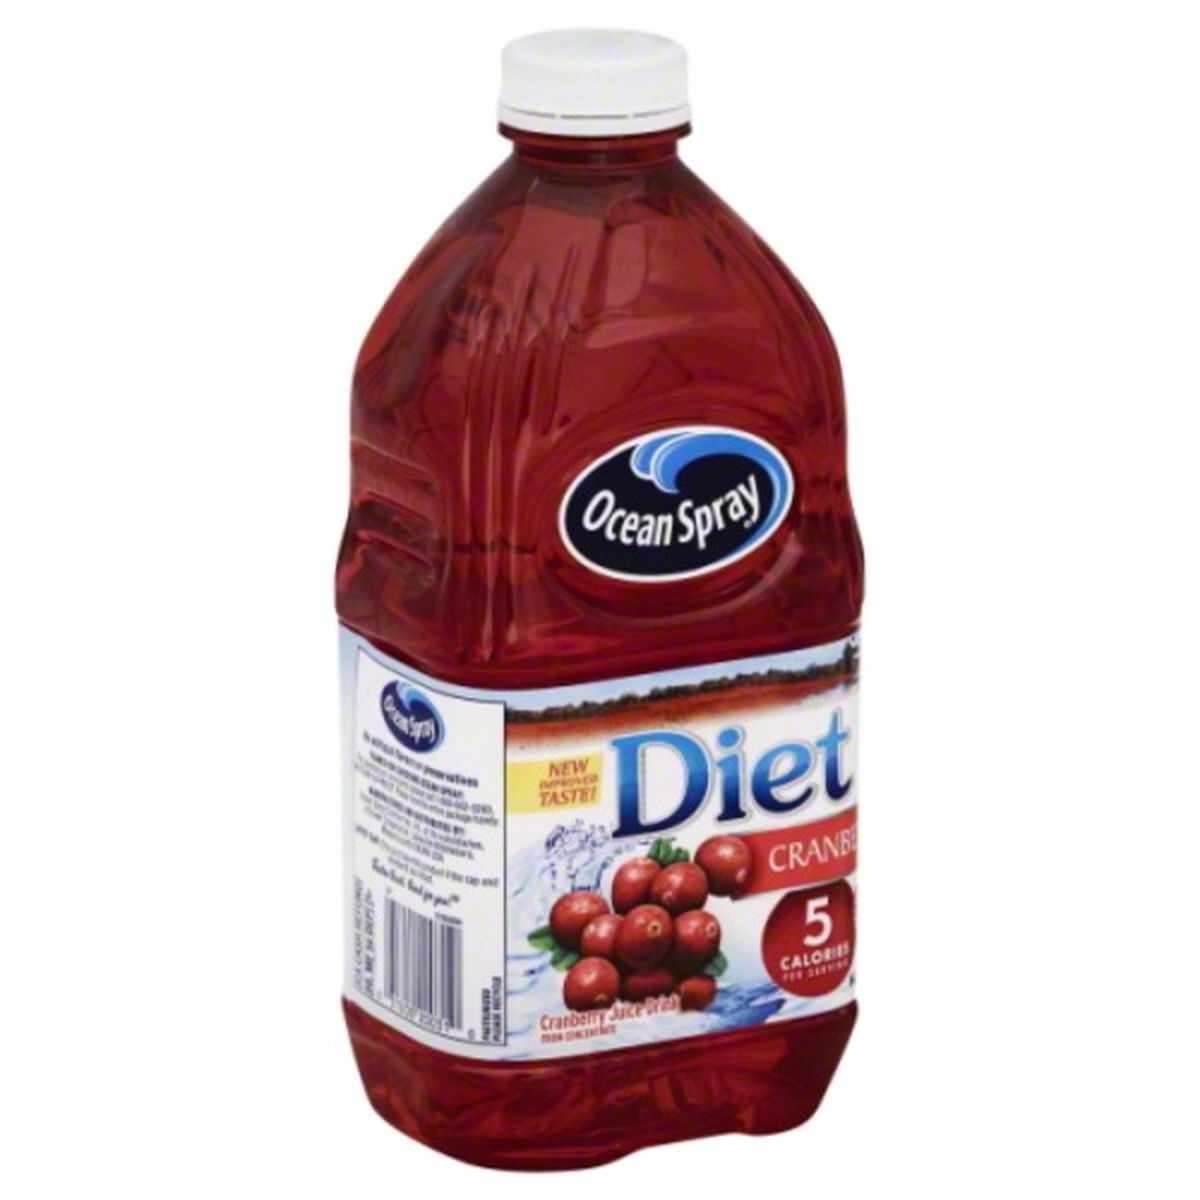 Calories in Ocean Spray Diet Juice Drink, Cranberry